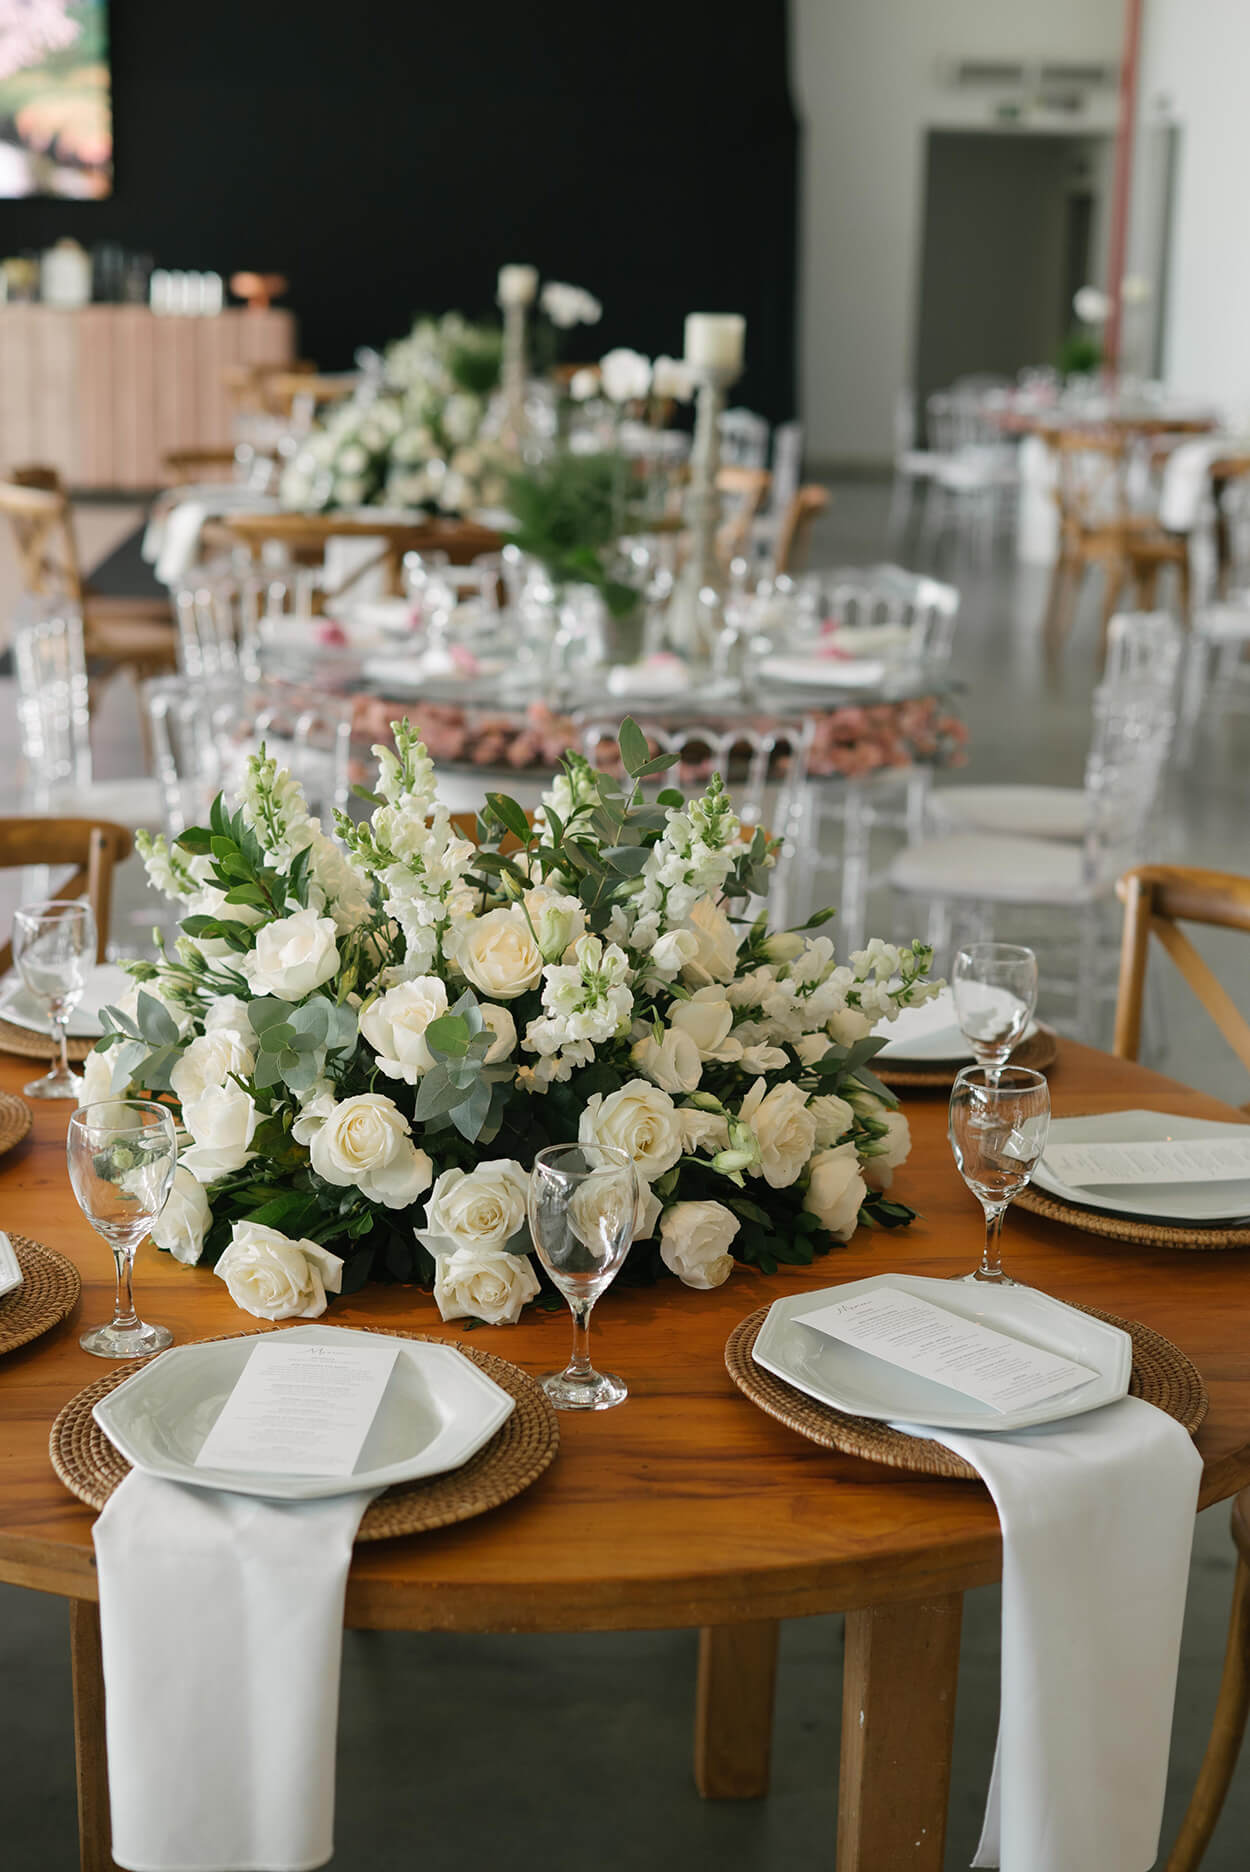 Mesa posta e centro de mesa com rosas brancas